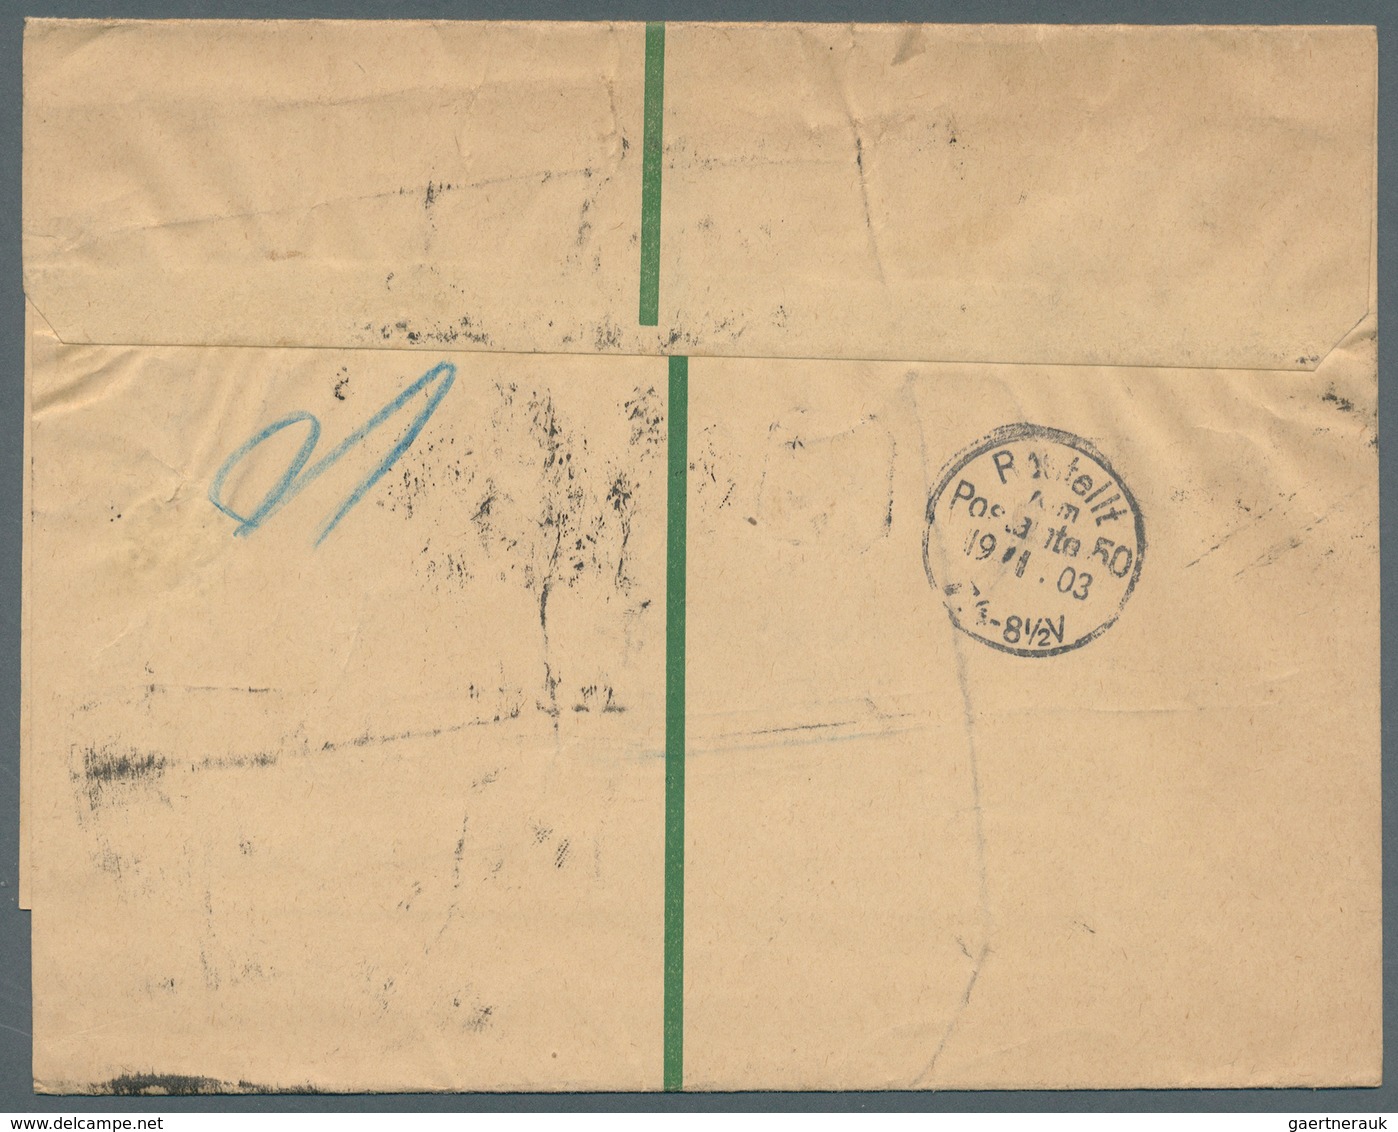 Russland - Ganzsachen: 1903/09, 4 Ganzsachen-Streifbänder 2 K. grün, davon 3 mit interessanten Zusat